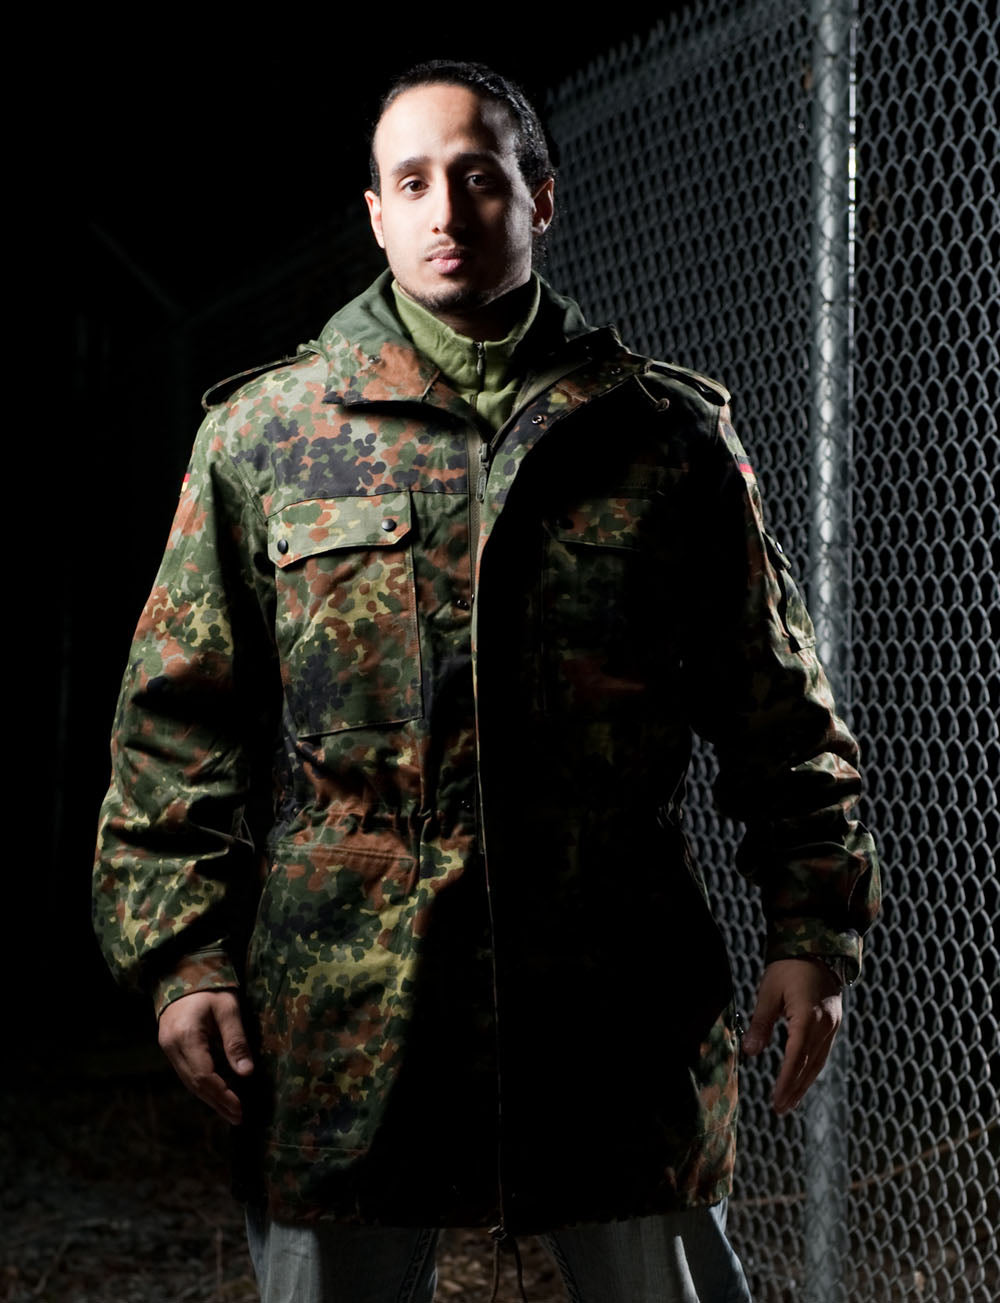 Full Sleeve Camouflage Military Jacket